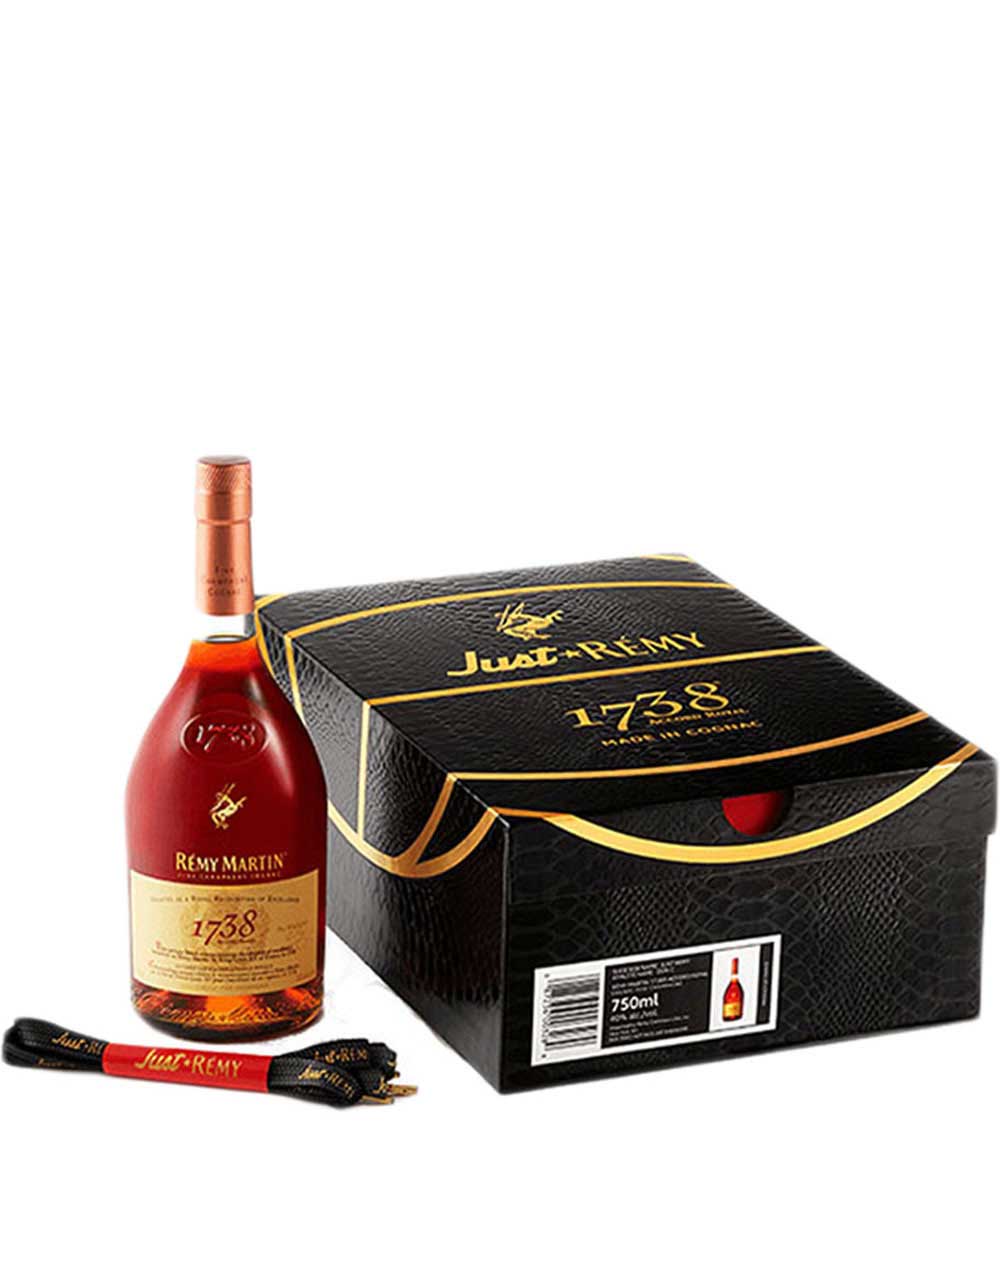 Paul Beau Hors d'Age Grande Champagne Cognac